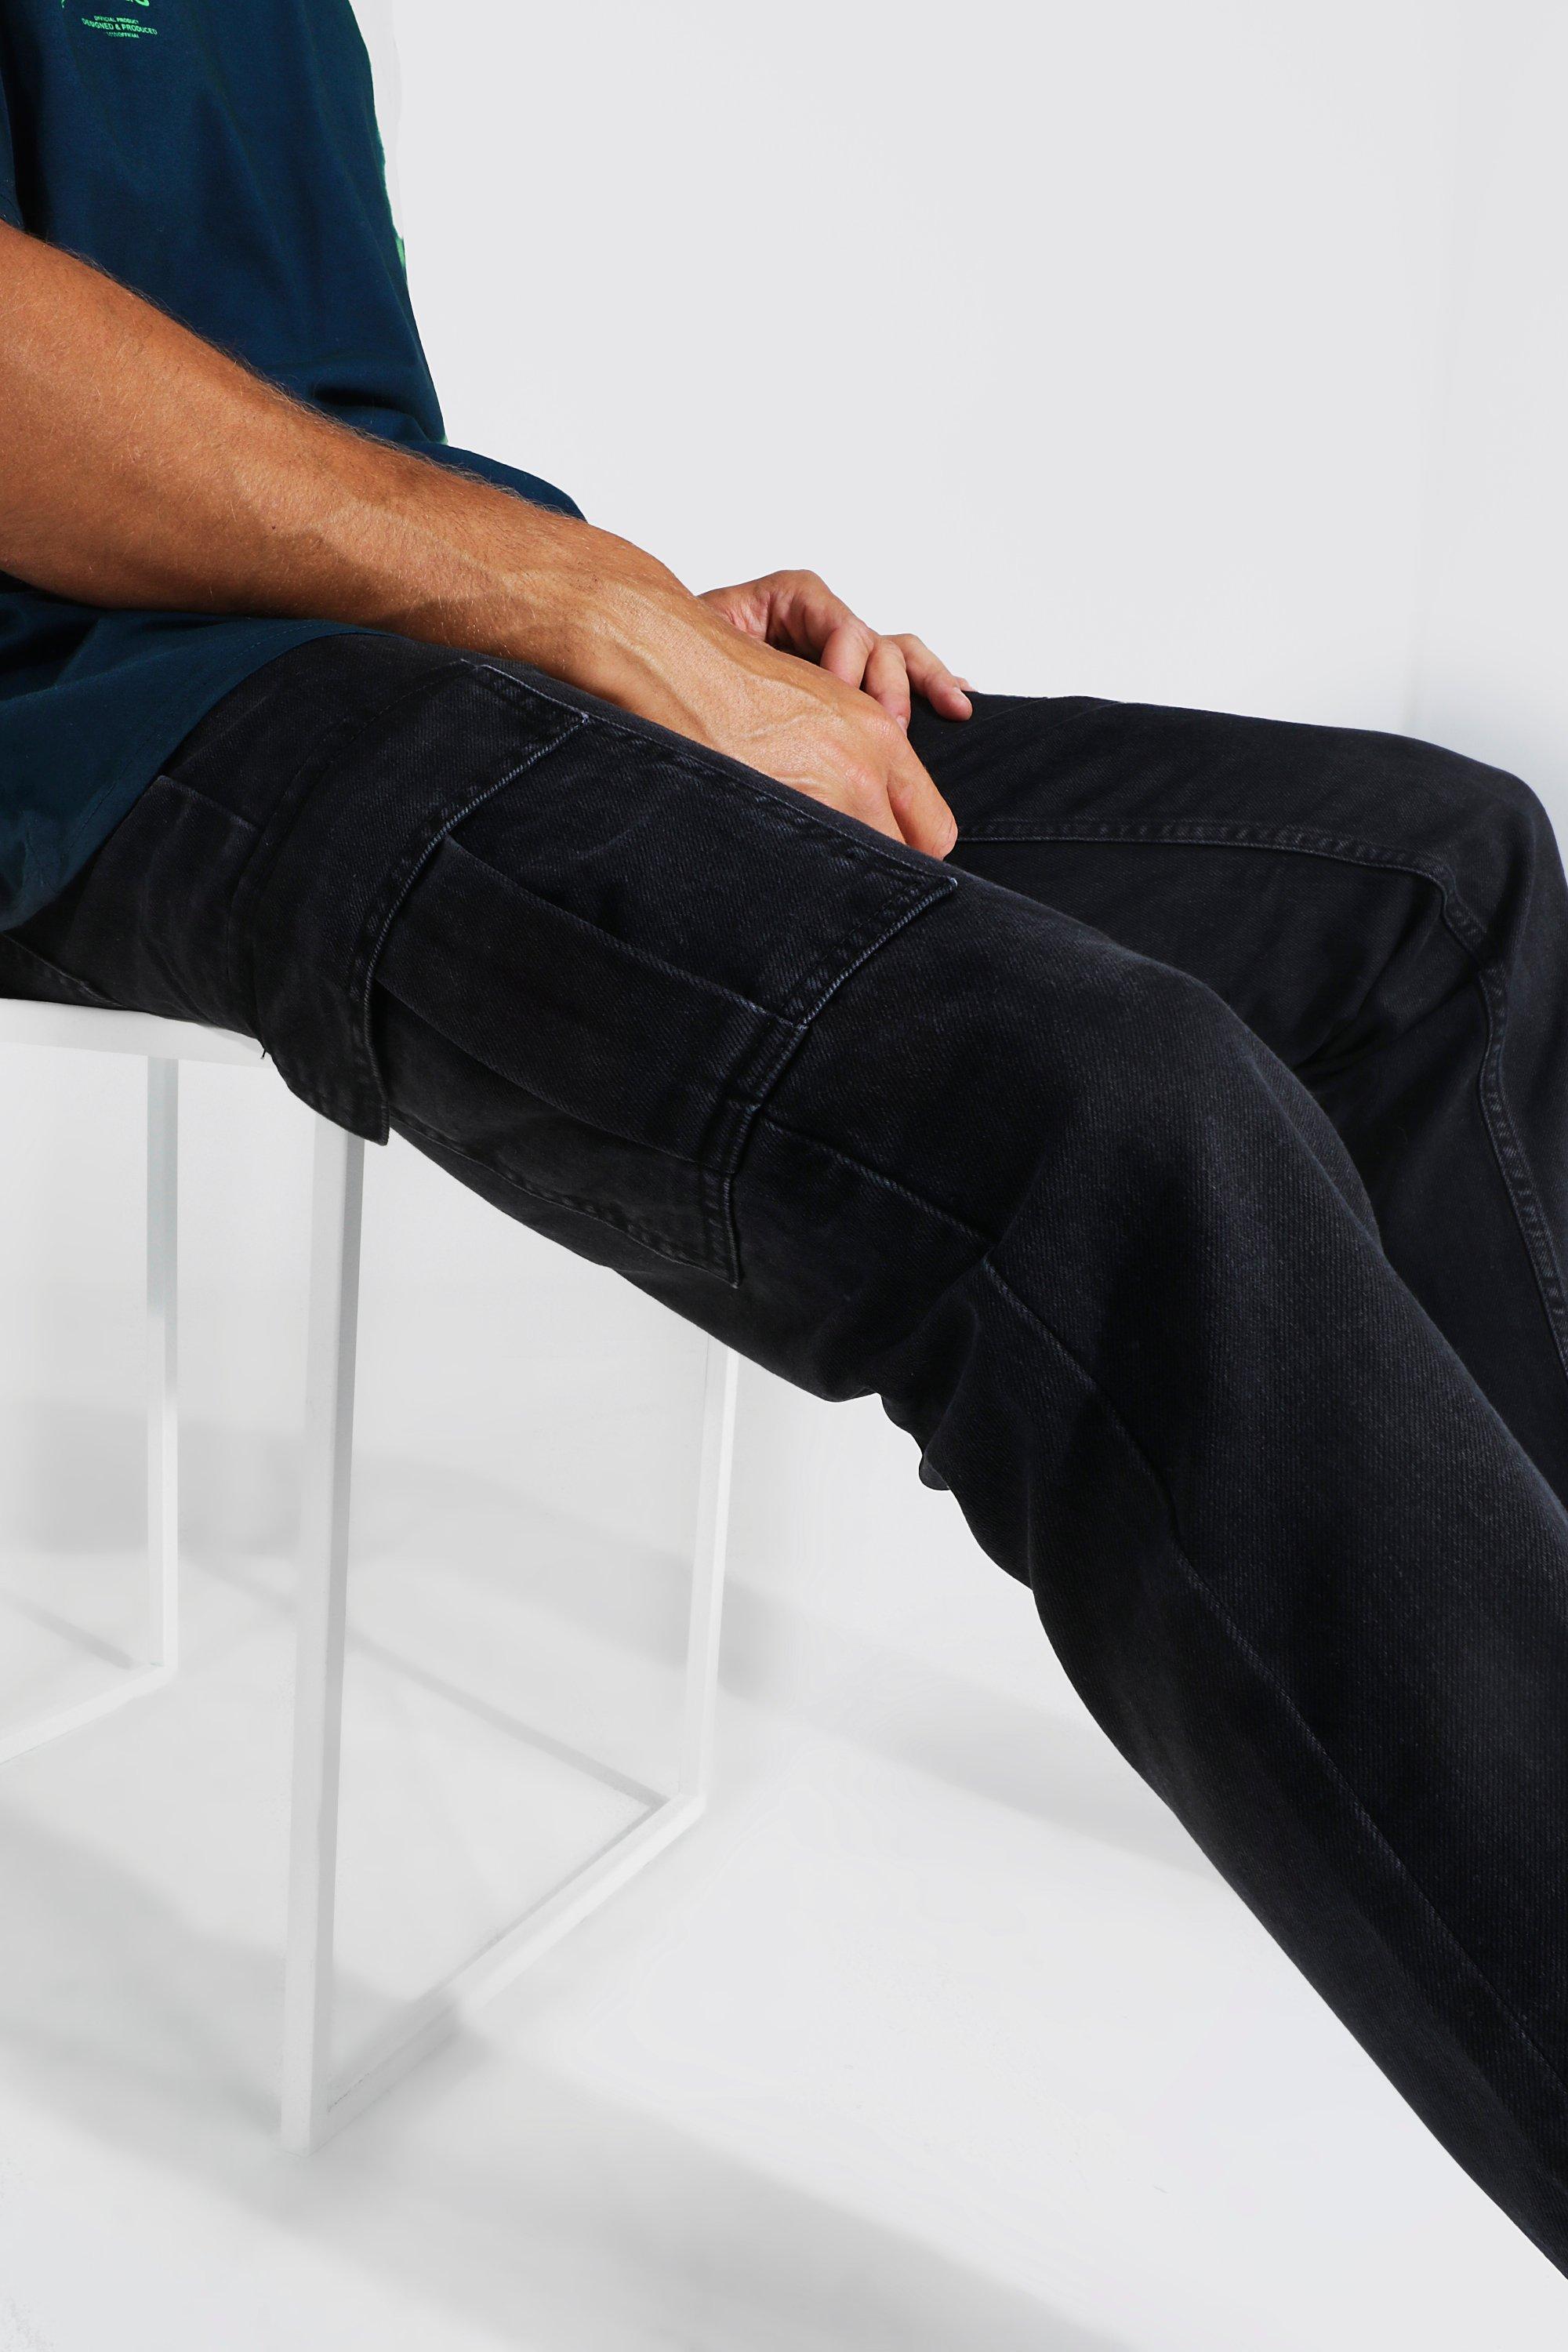 2023 Y2K Streetwear Ankle Zipper Black Cargo Jeans Pants For Men